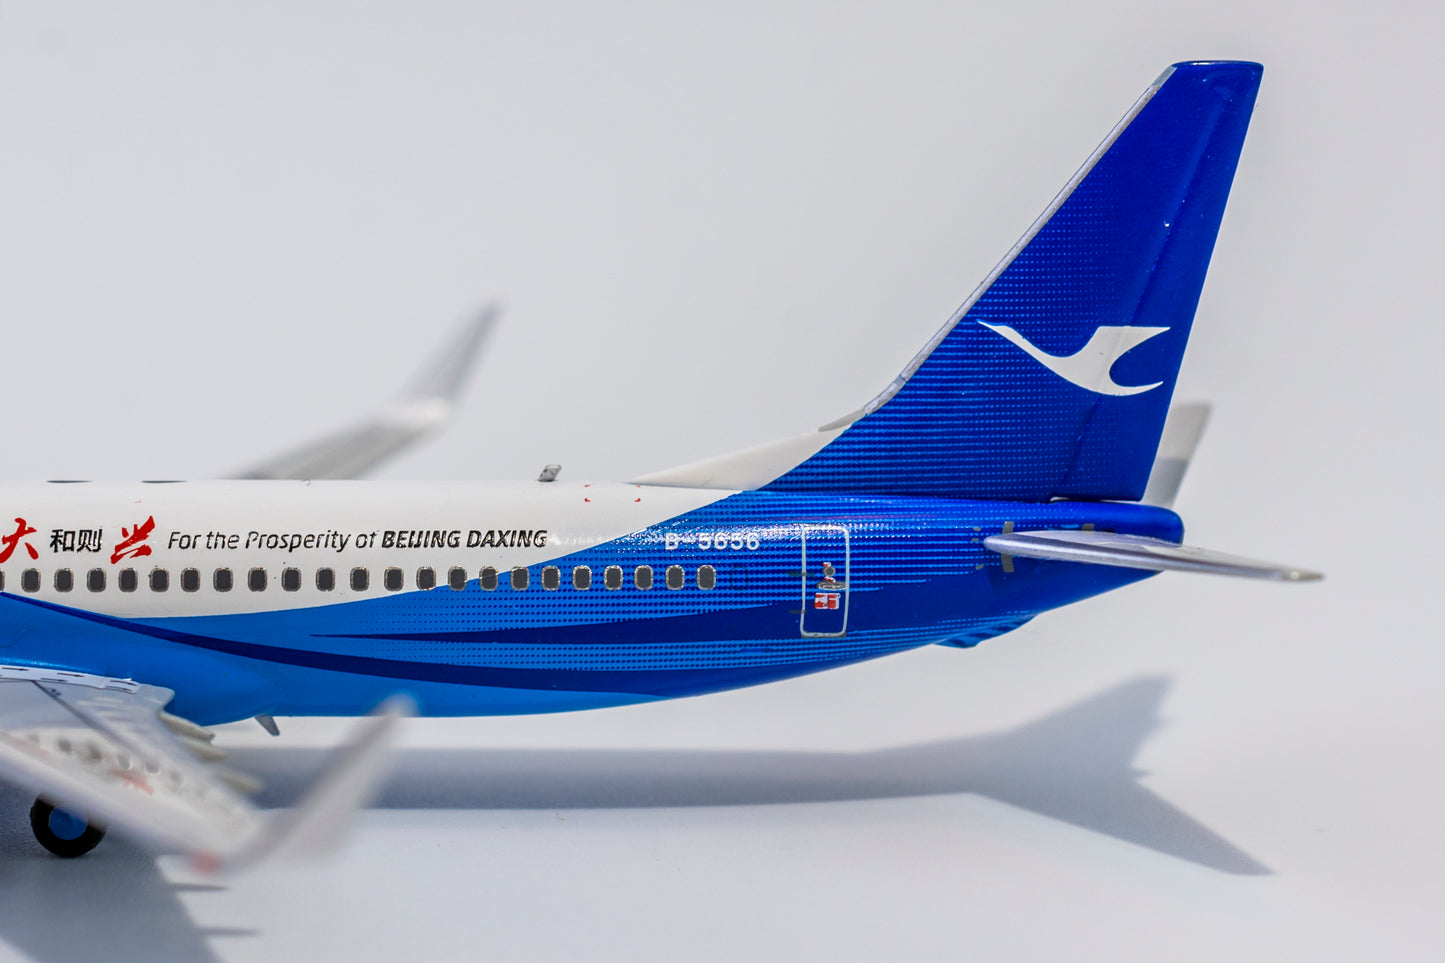 1:400 NG Models Xiamen Air Boeing 737-800 "Bejing" B-5656 NG58082